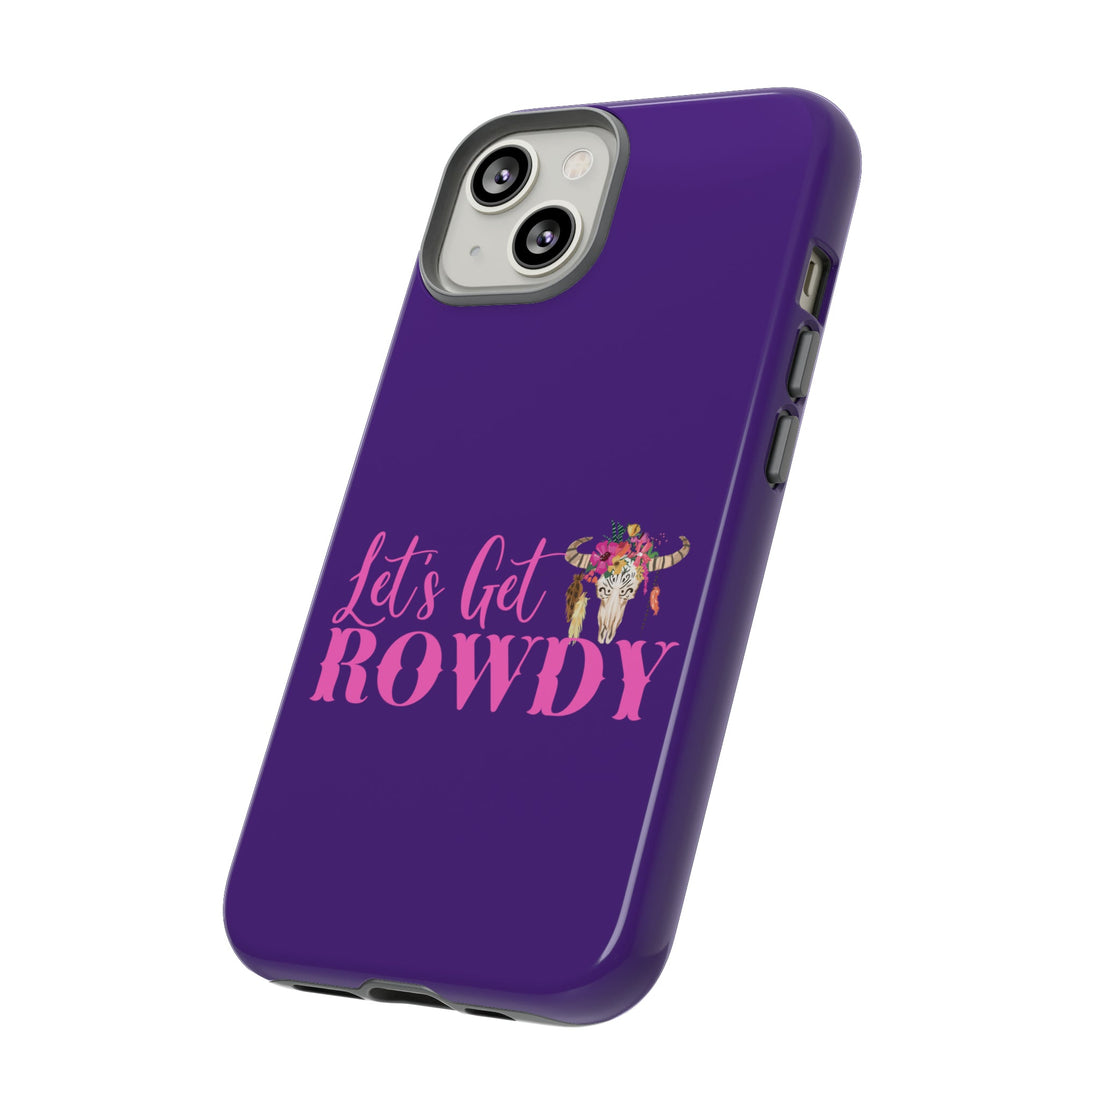 Let's Get Rowdy Tough Cases - Phone Case - Positively Sassy - Let's Get Rowdy Tough Cases